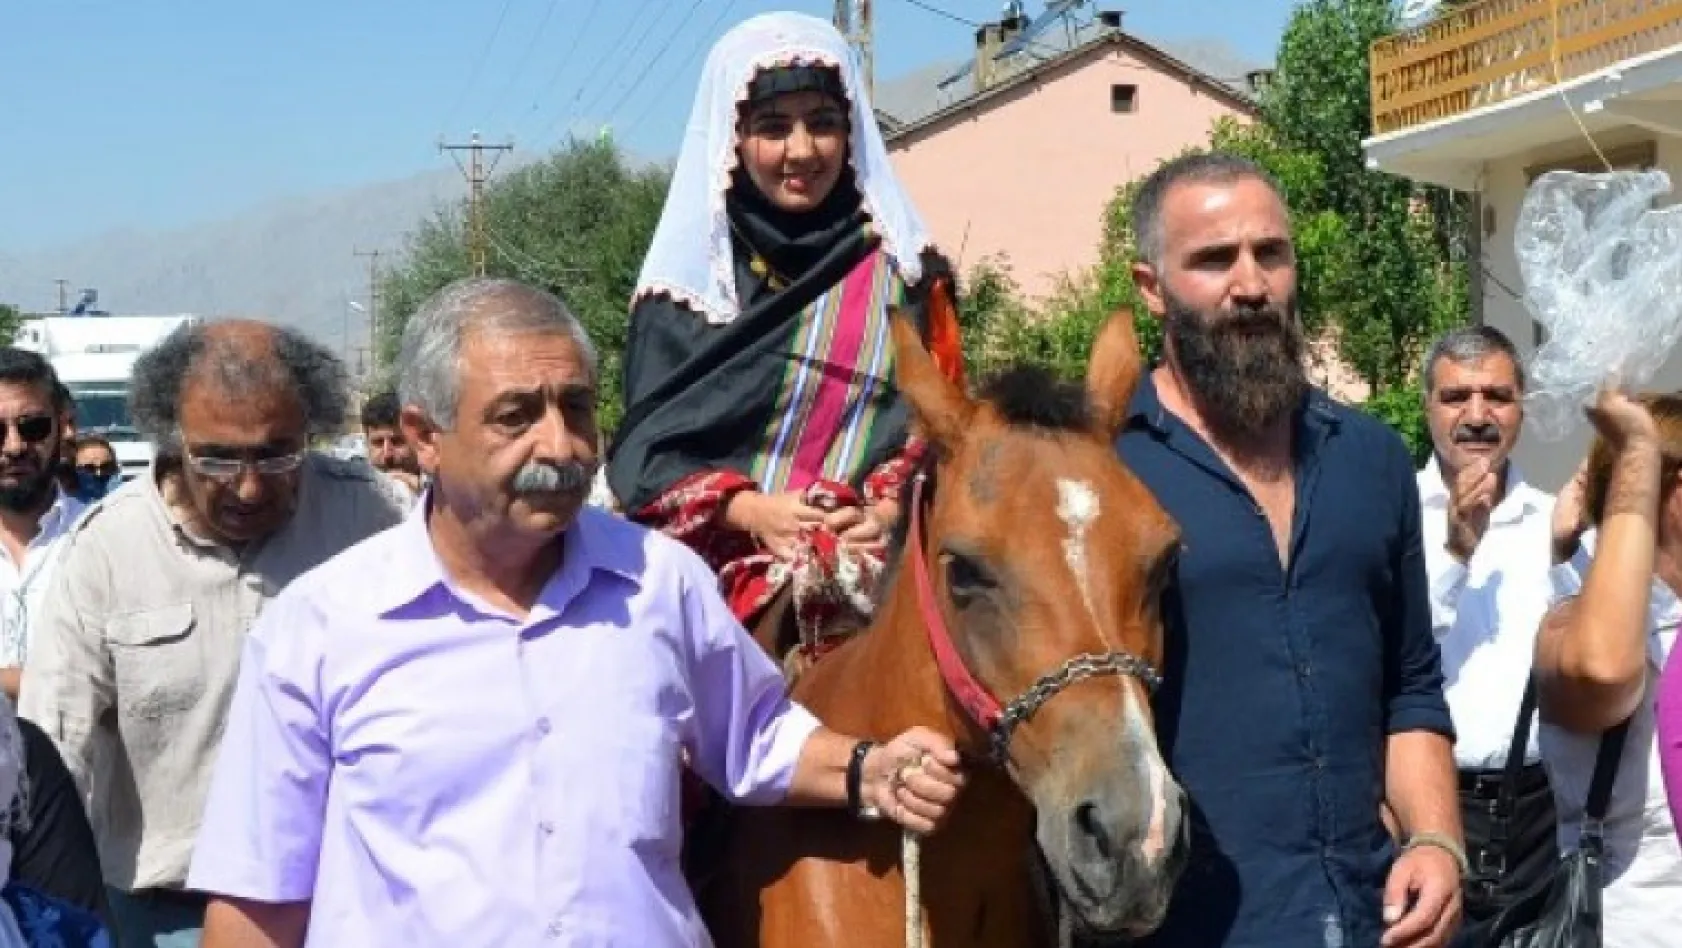 Tunceli'de 'atlı gelin' geleneği yaşatıldı